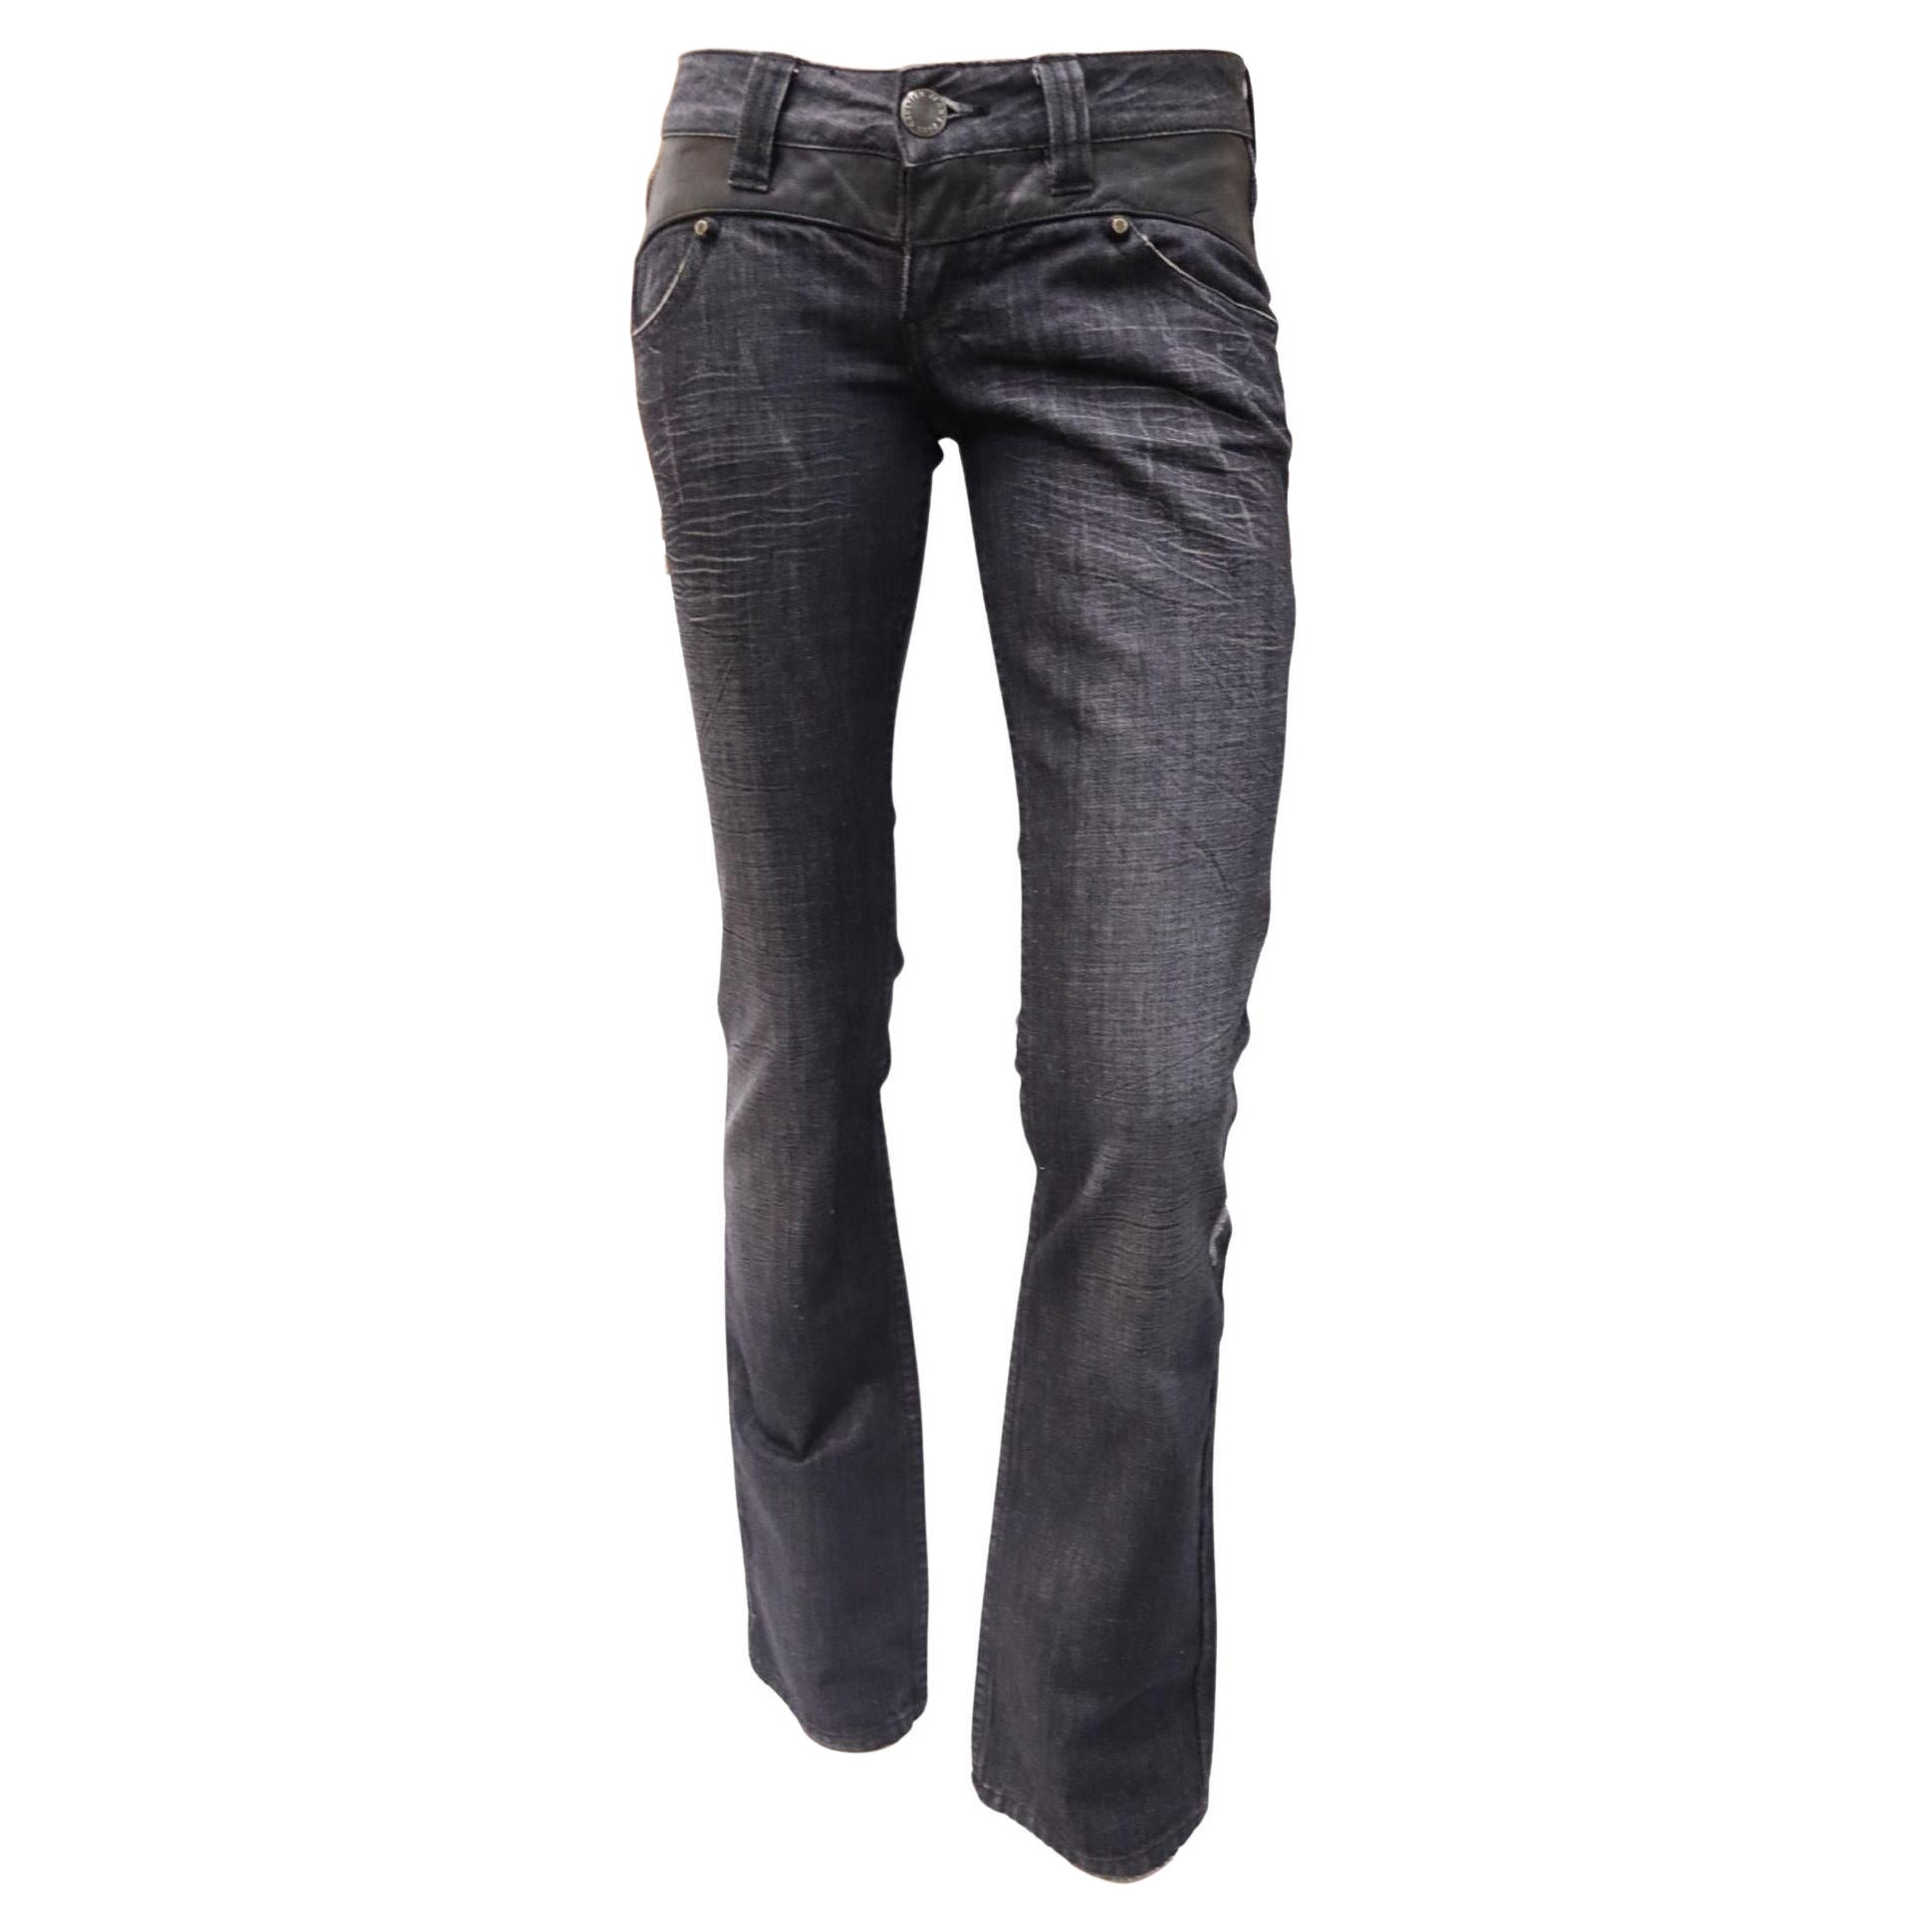 Jean Paul Gaultier EU 26 Low Rise Vintage Denim Jeans For Sale